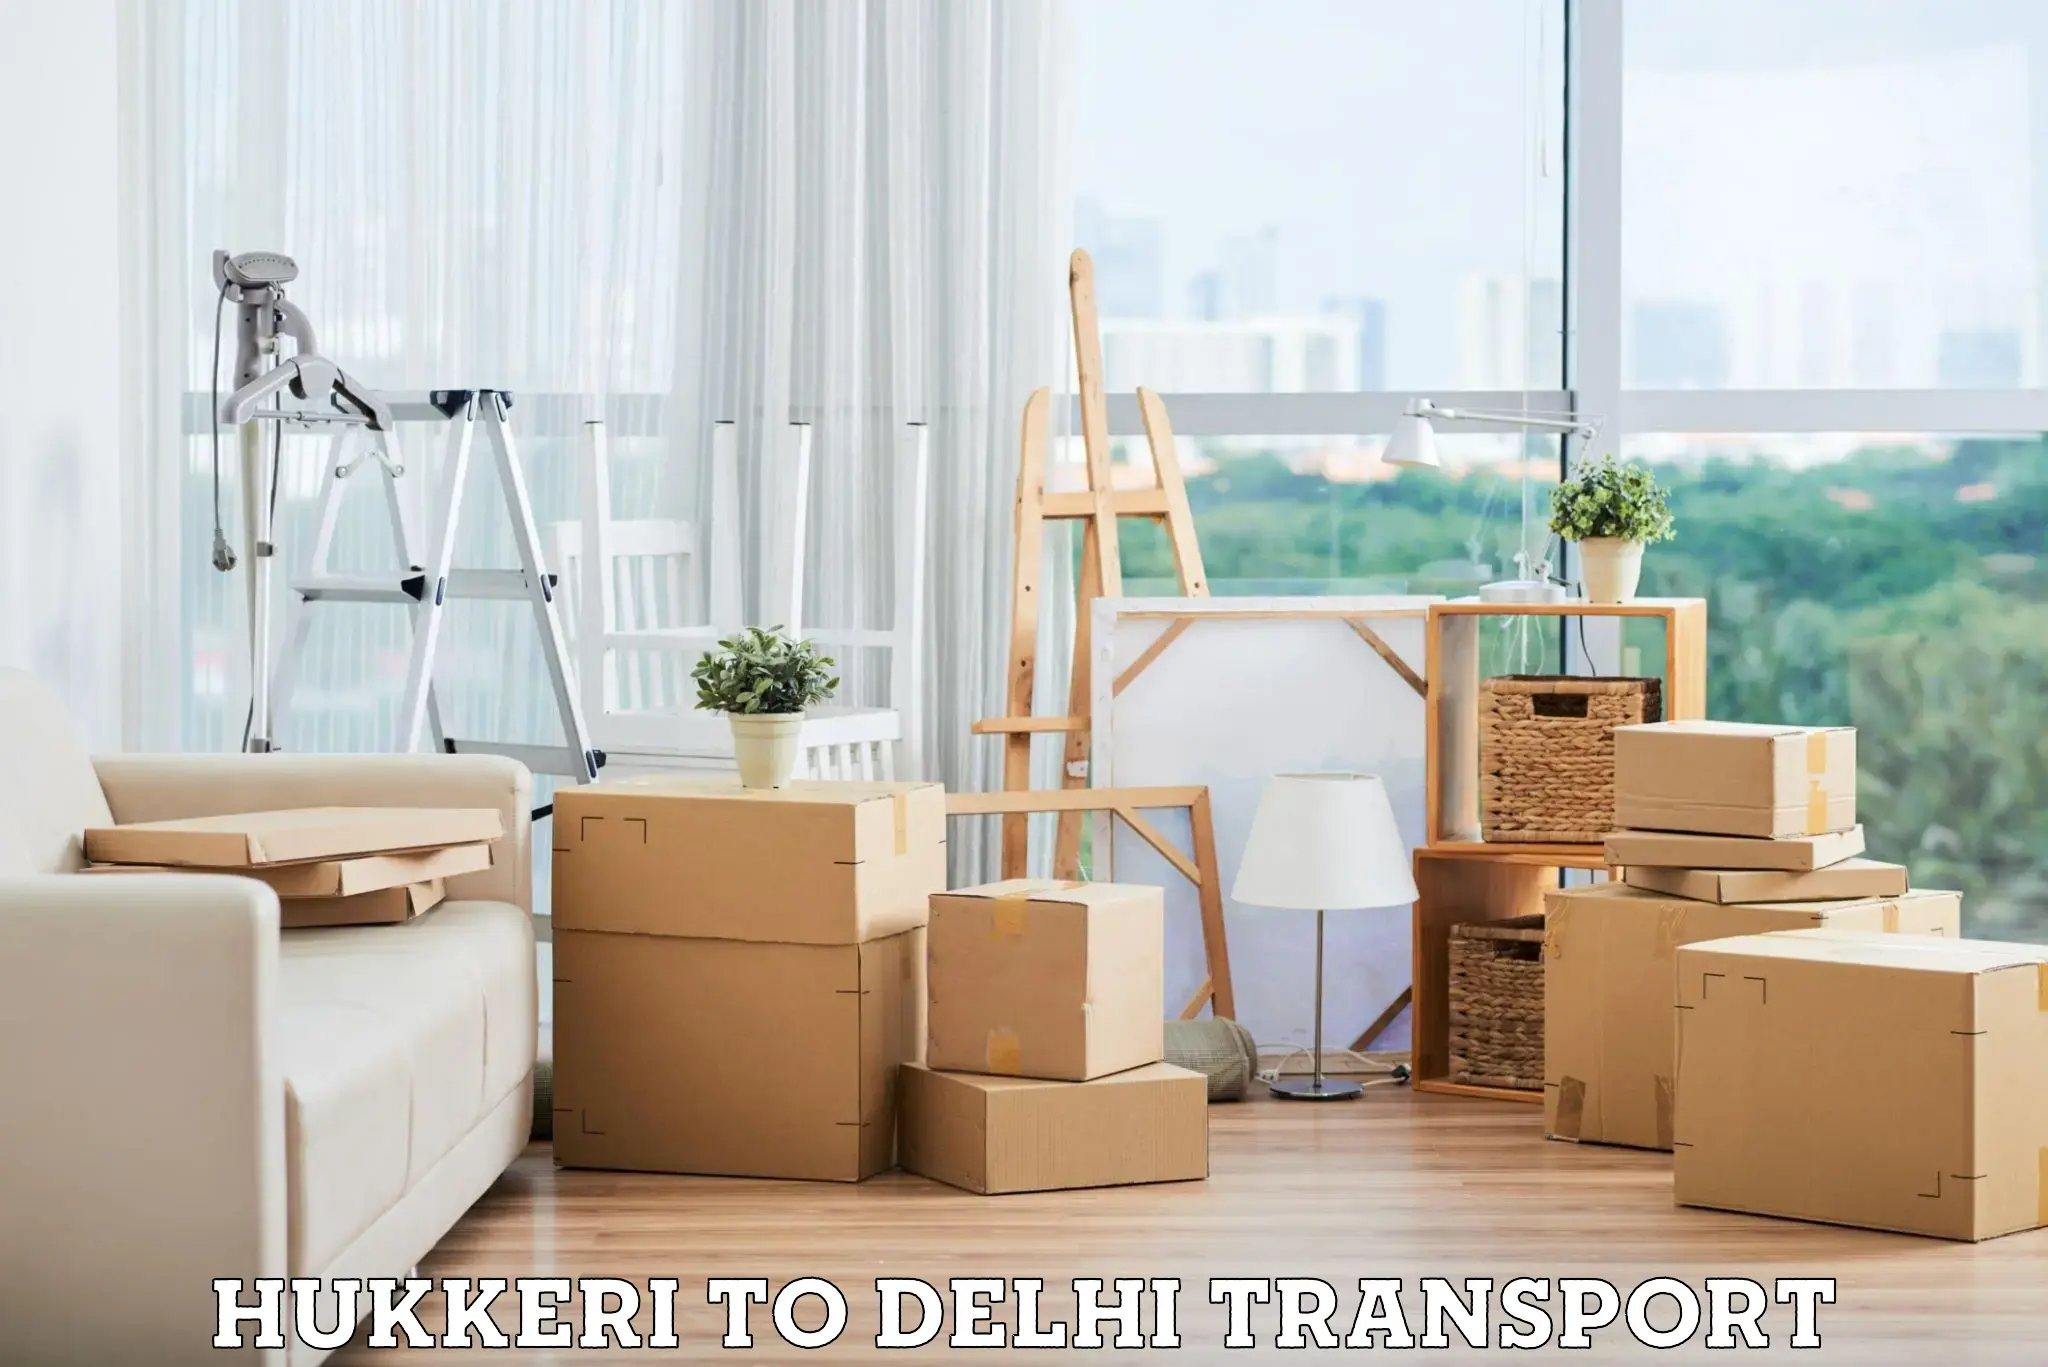 Parcel transport services Hukkeri to Delhi